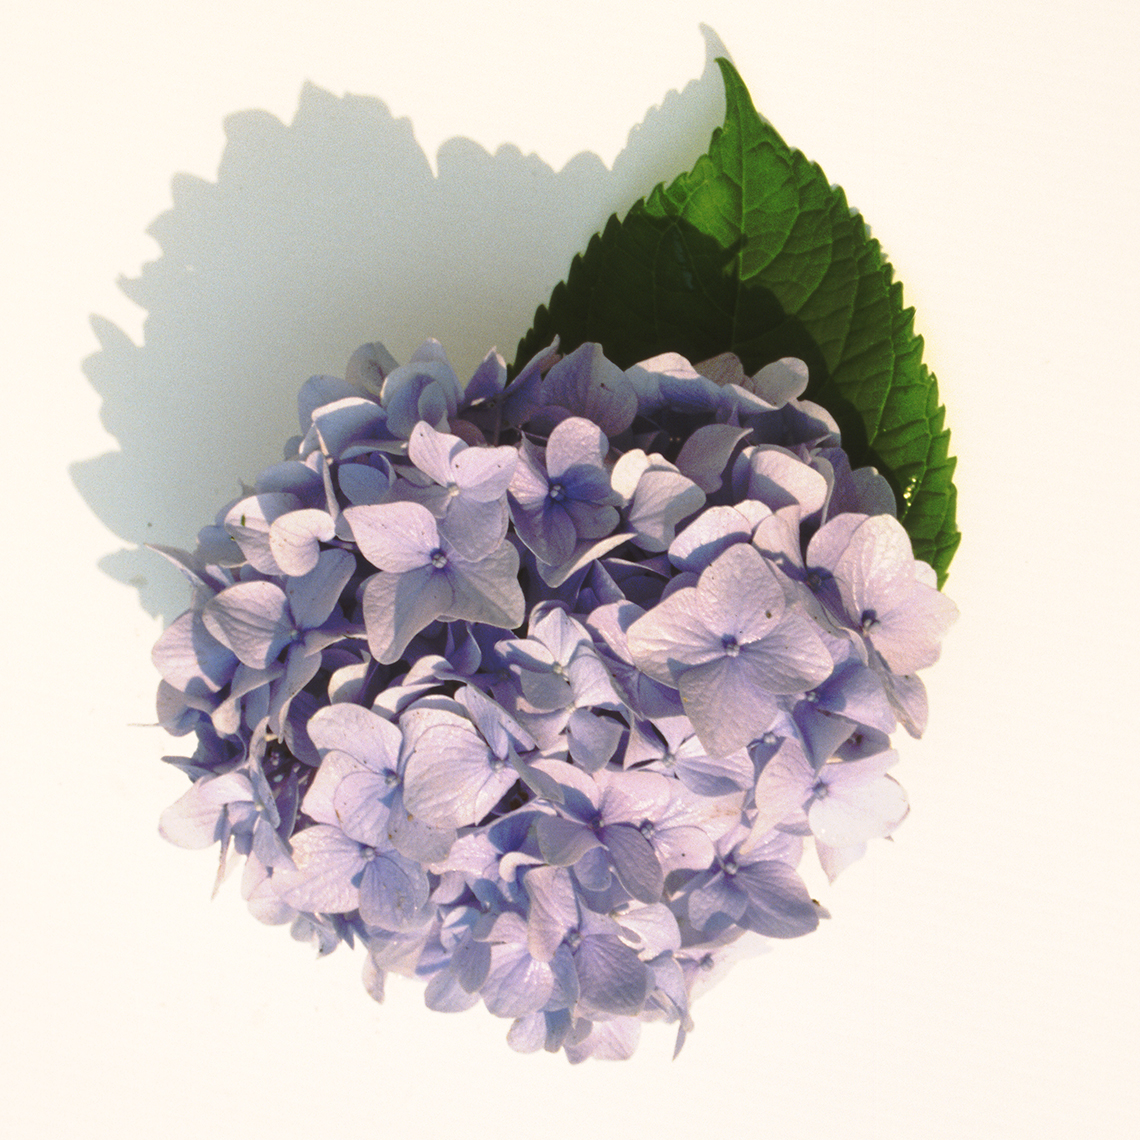 A single purple blue bloom of All Summer Beauty hydrangea